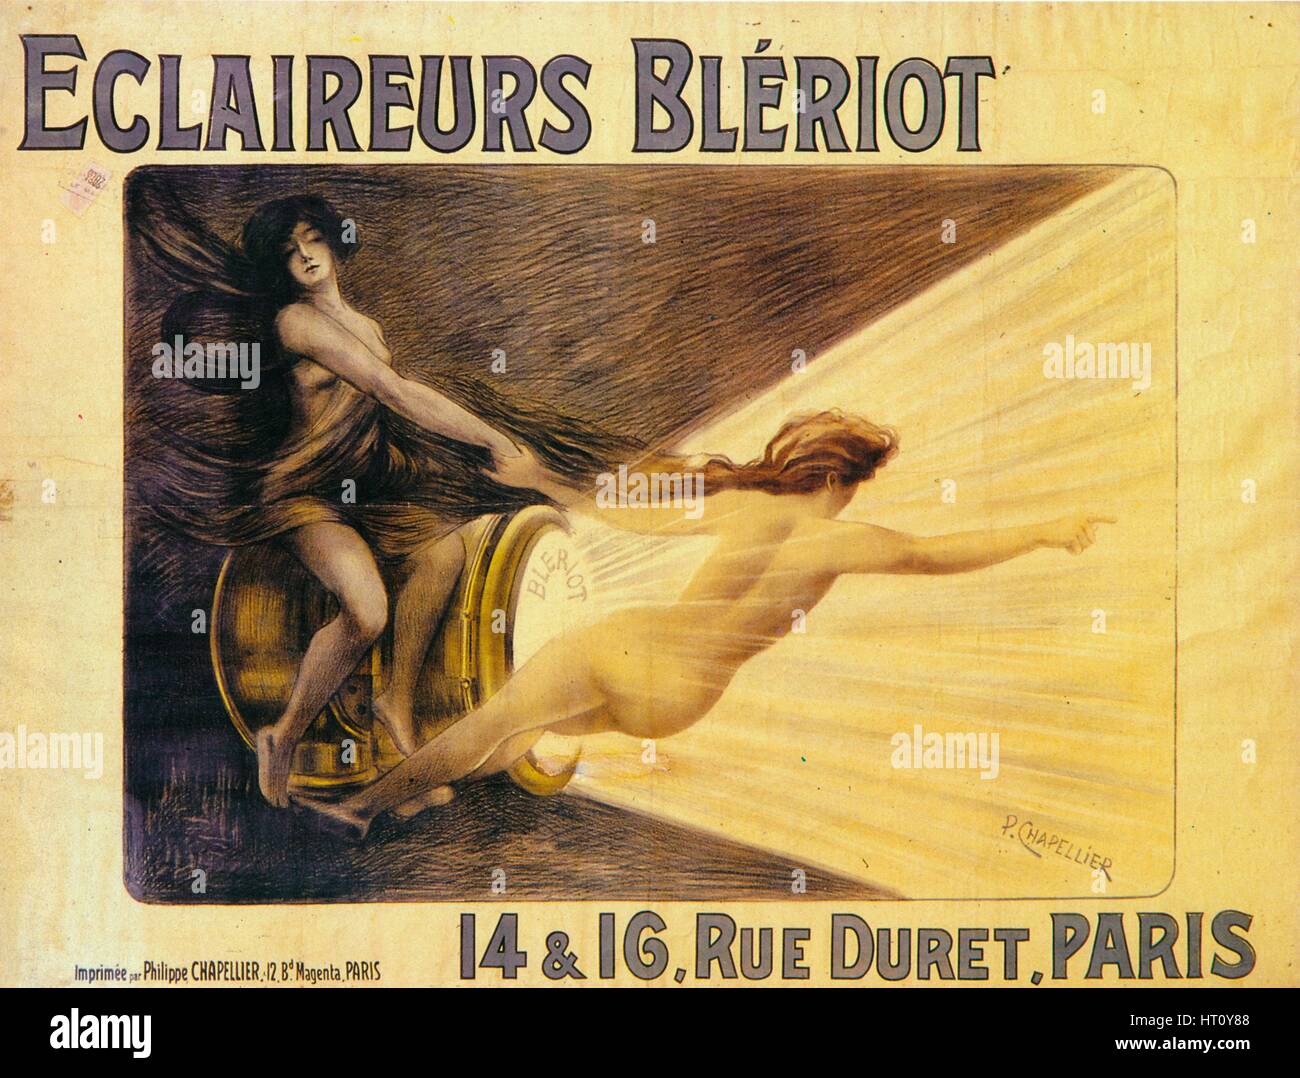 Pubblicità per proiettori Bleriot, c1905. Artista: Philippe Chapellier. Foto Stock